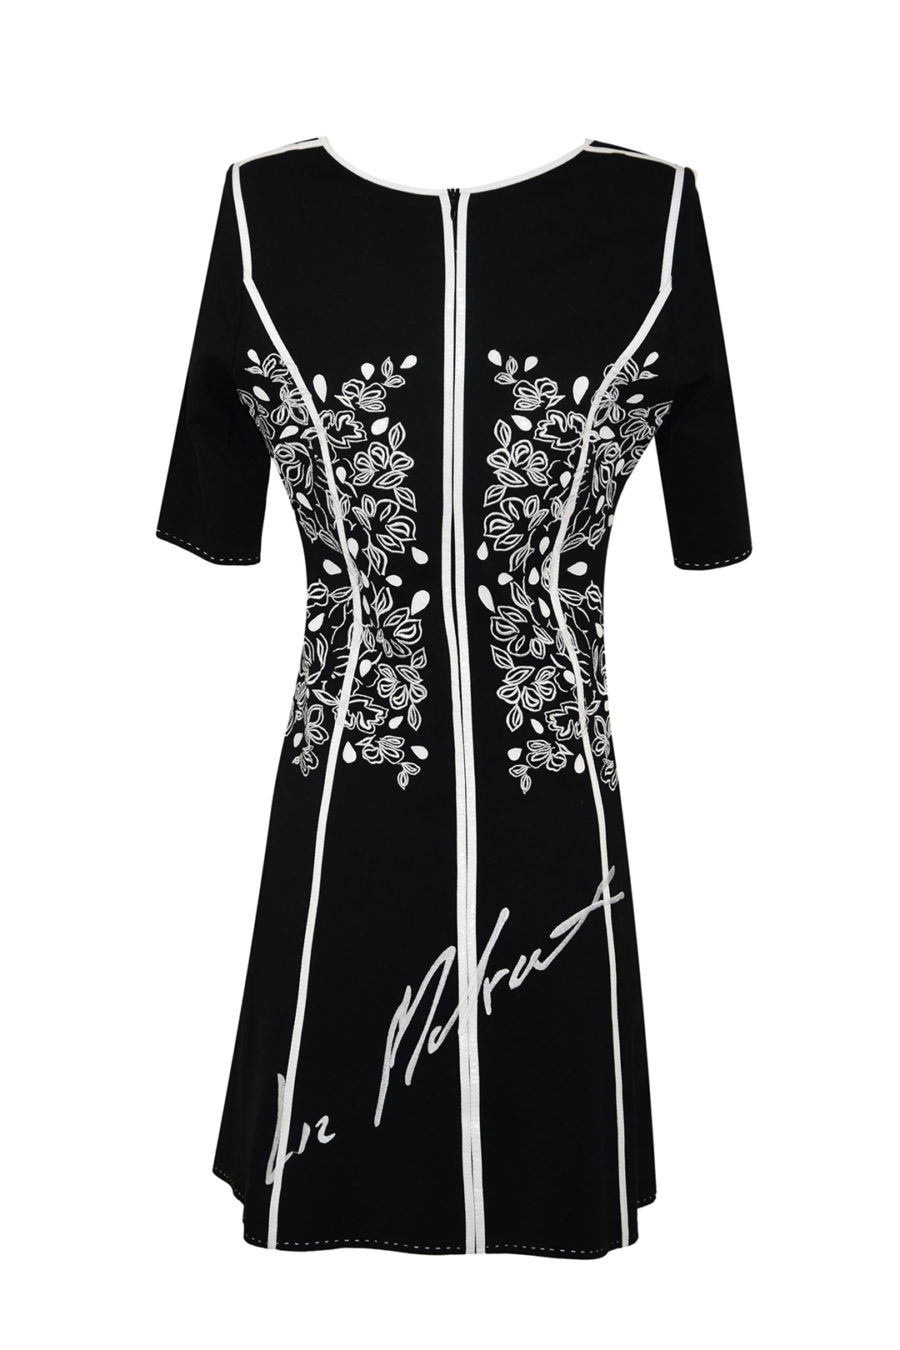 Kleid, Doublejersey, mit tiny-leaf-embroidery, Mini-Krokopatches und Lackkontrasten in schwarz